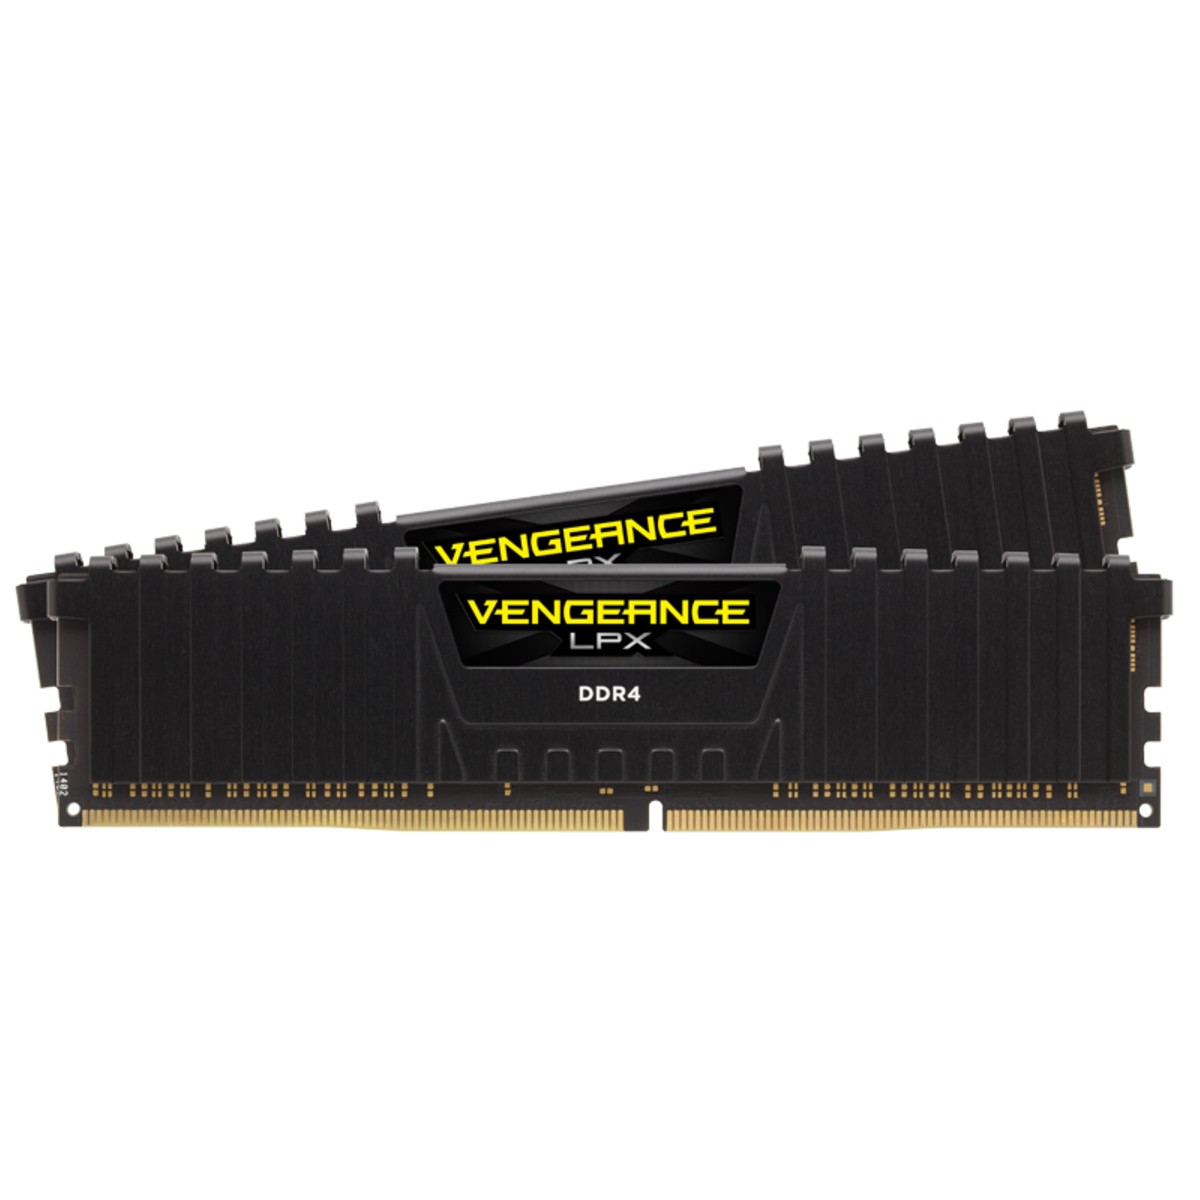 RAM Corsair Vengeance LPX DDR4 3000MHz 16GB (2×8) CL16